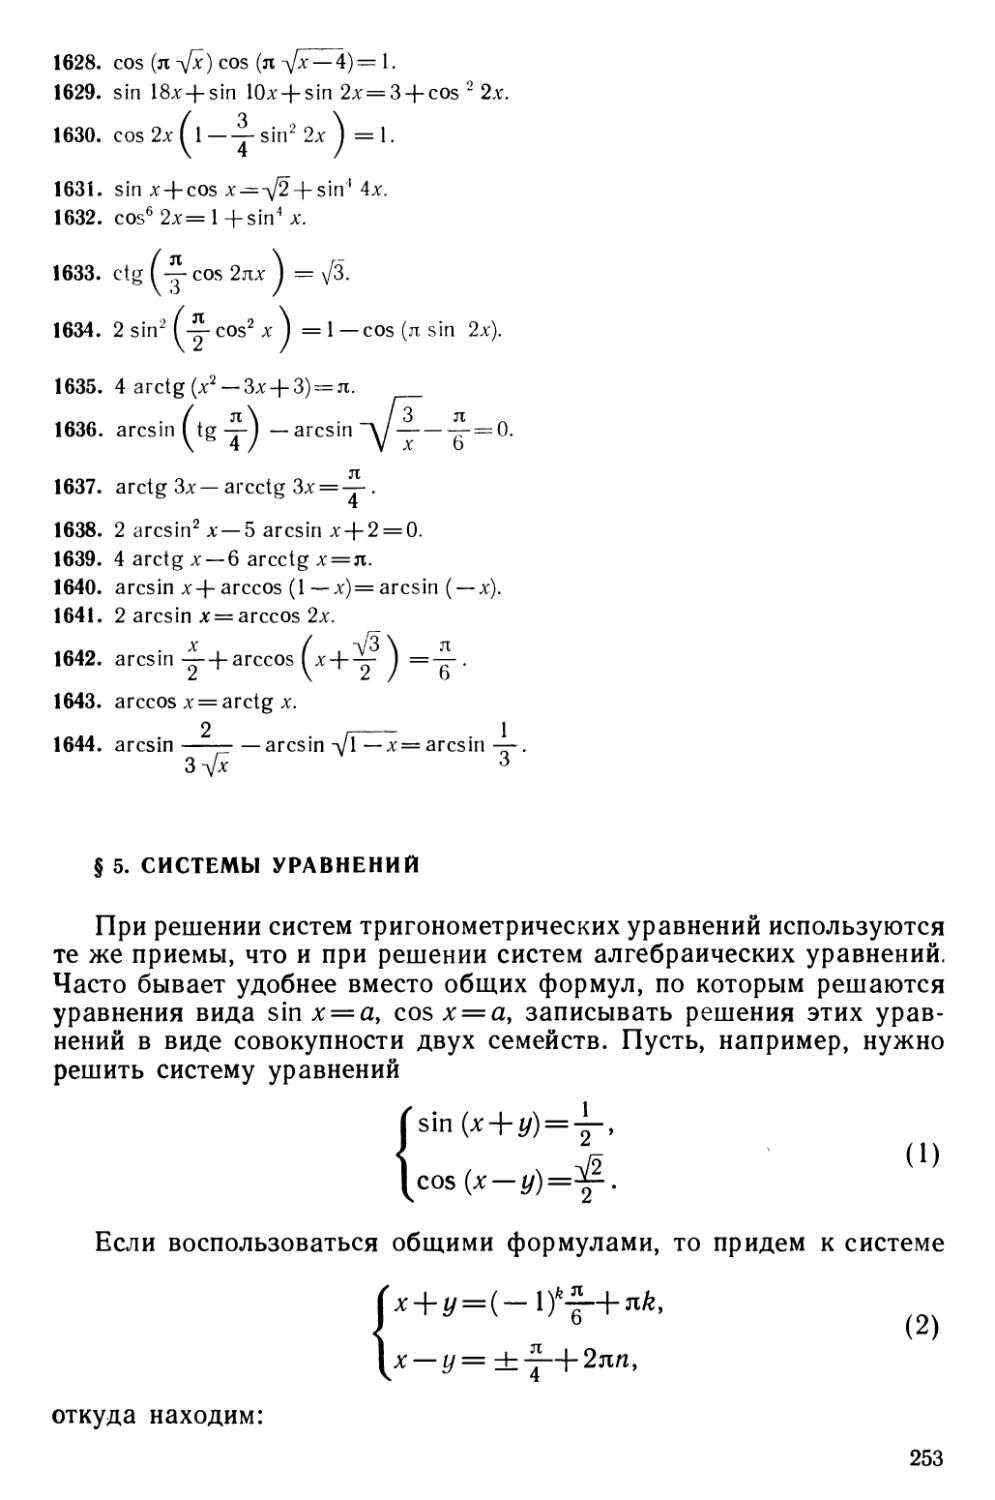 § 5 Системы уравнений